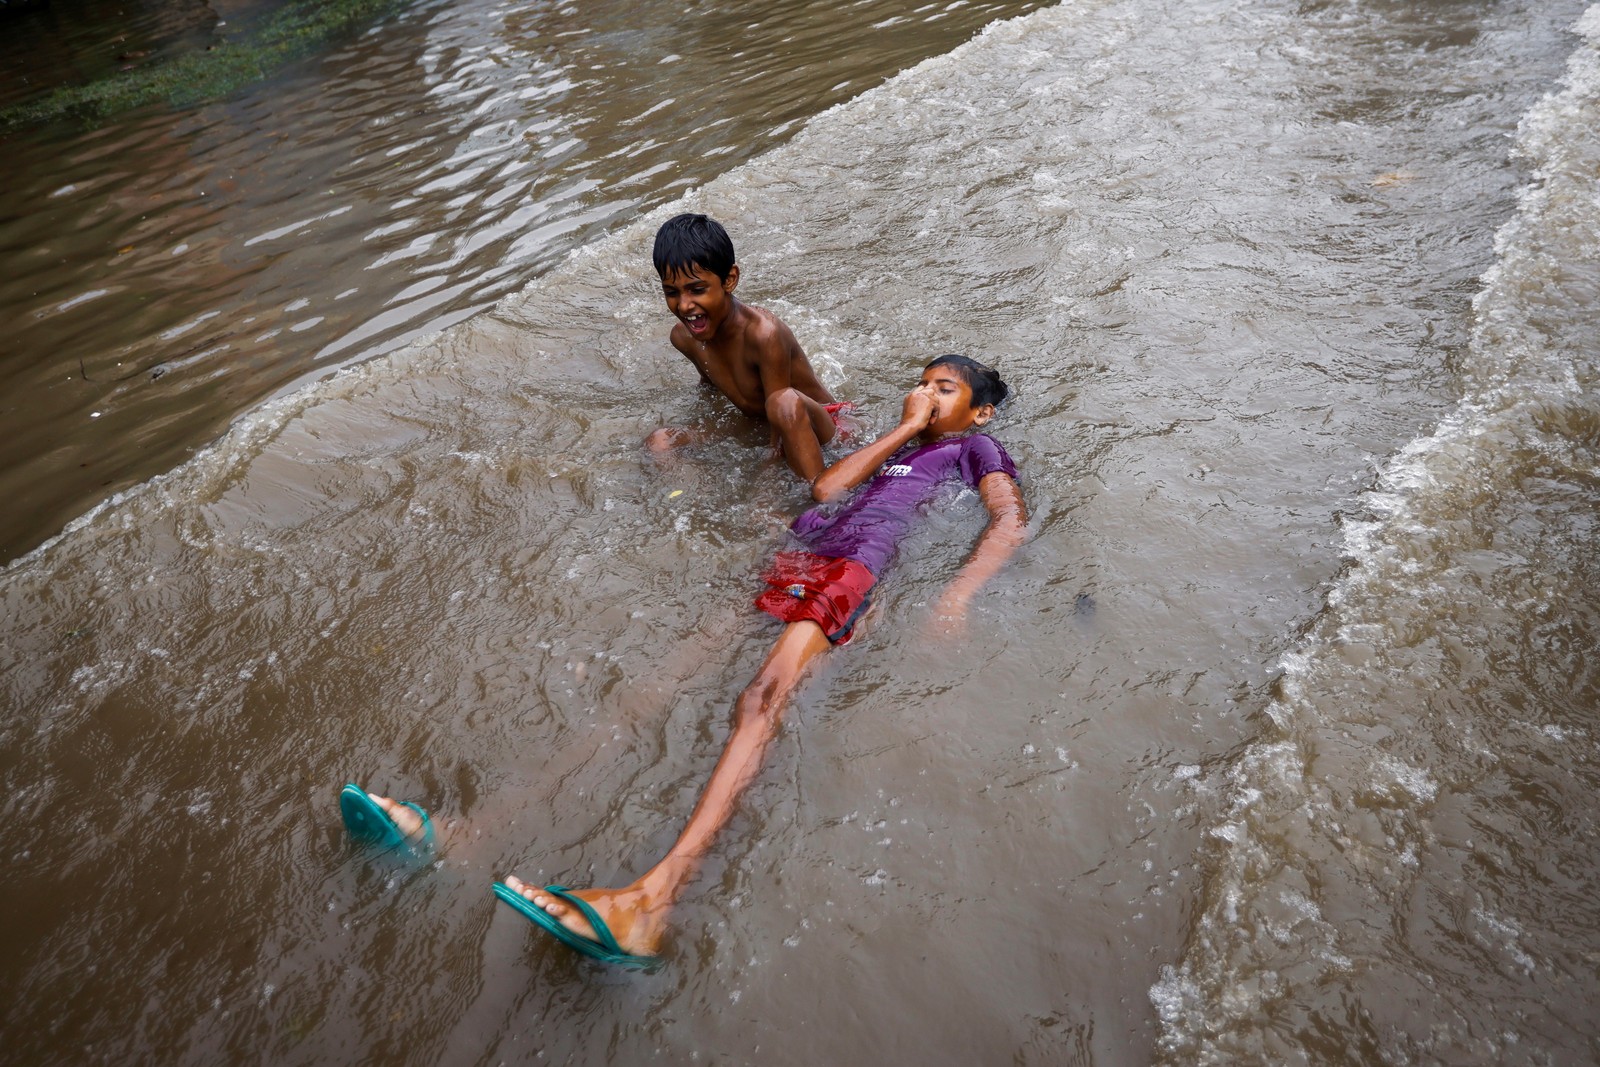 Crianças brincam em uma rua inundada após fortes chuvas em Nova Delhi, ÍndiaREUTERS